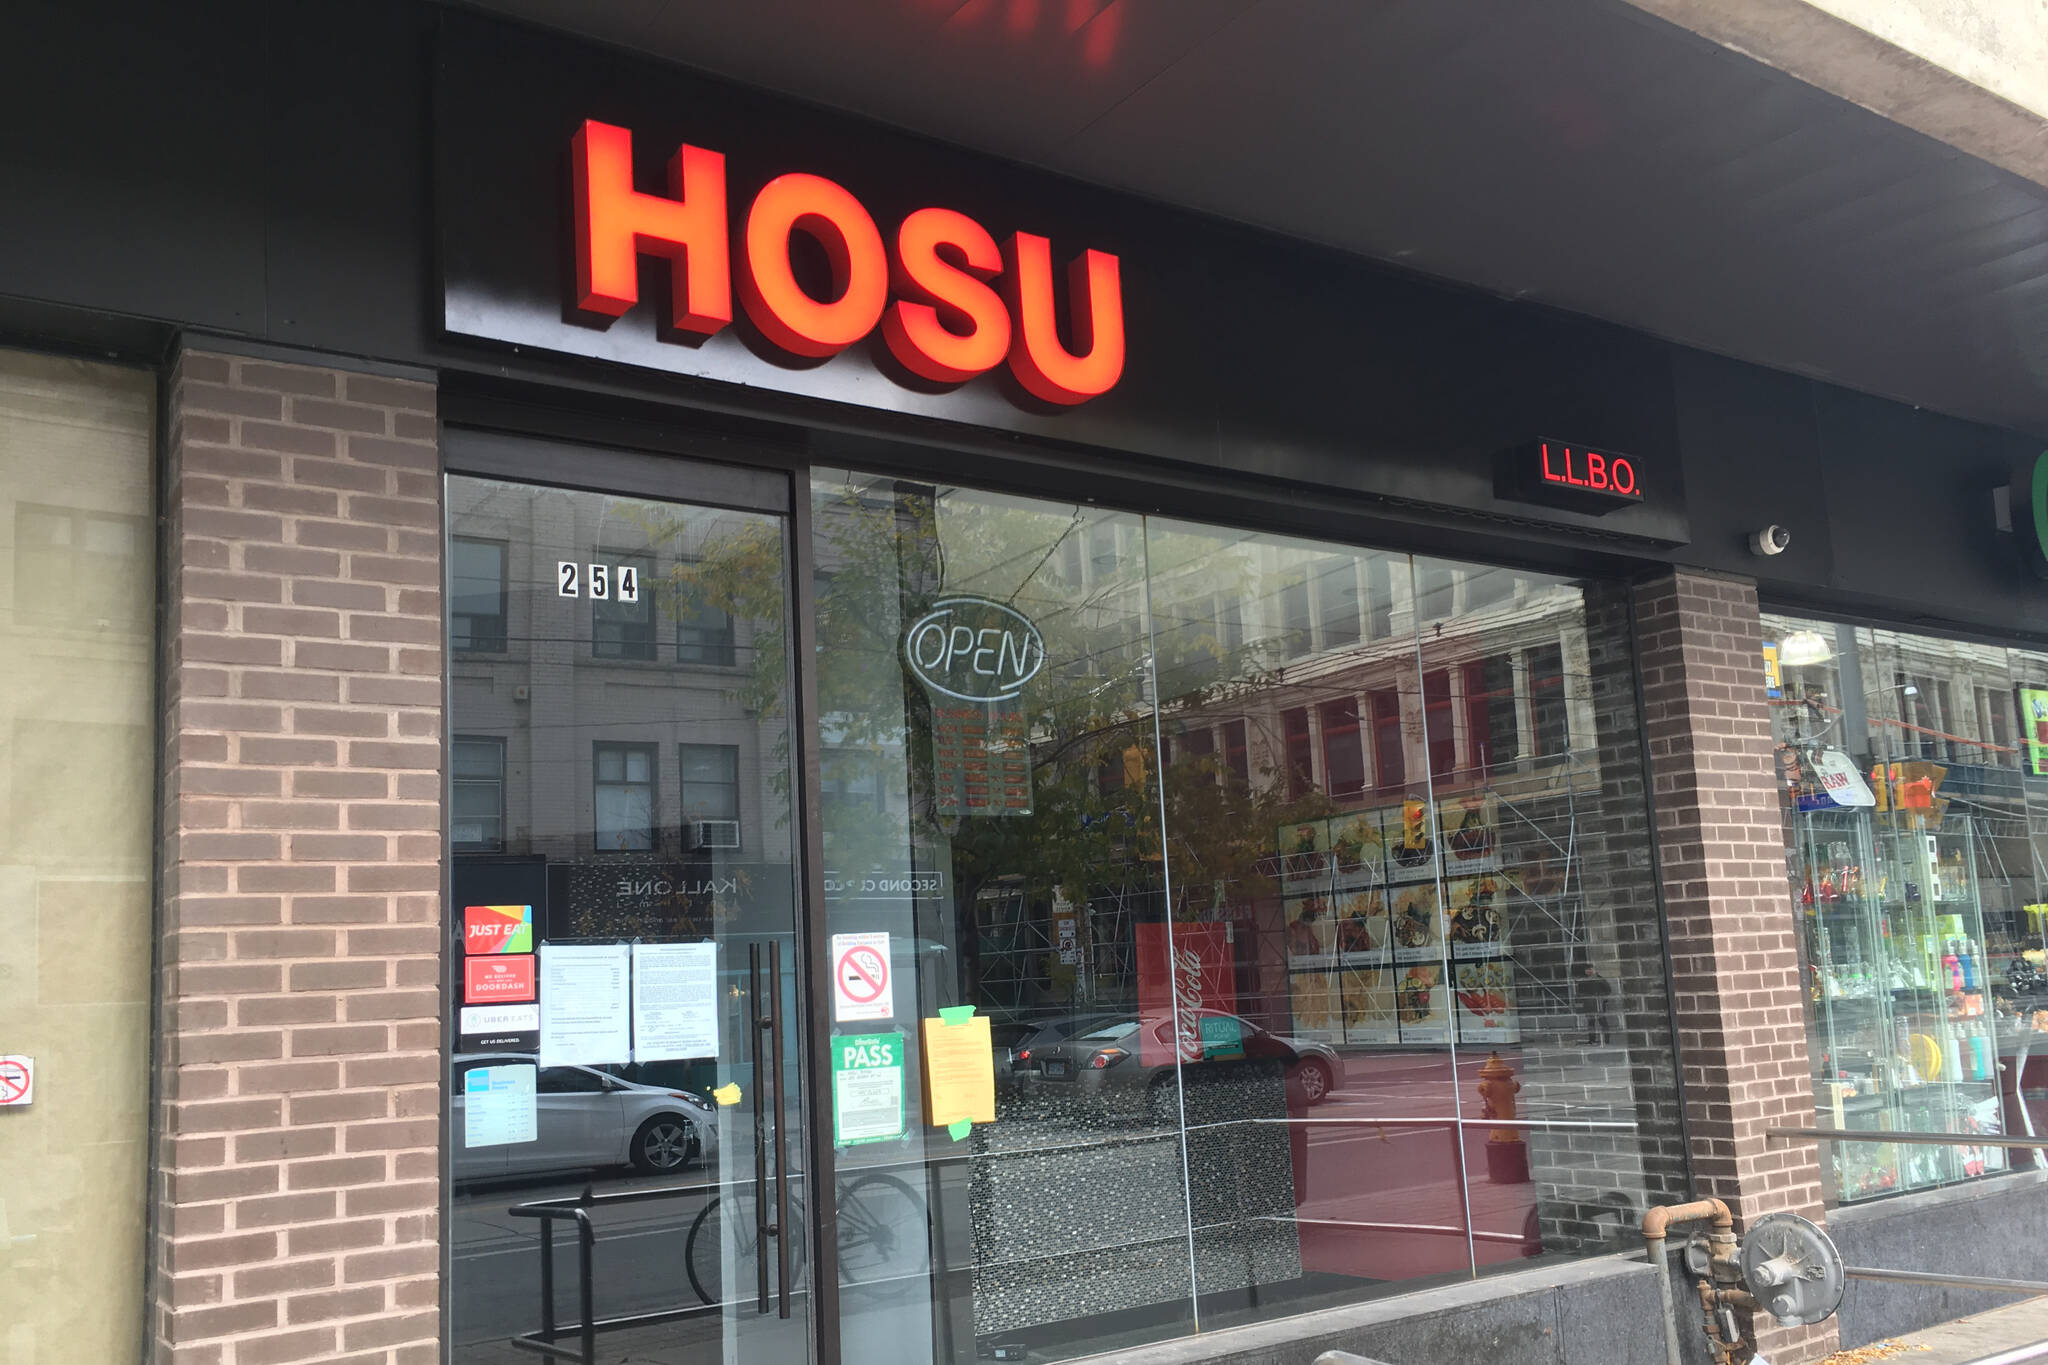 Hosu restaurant closed